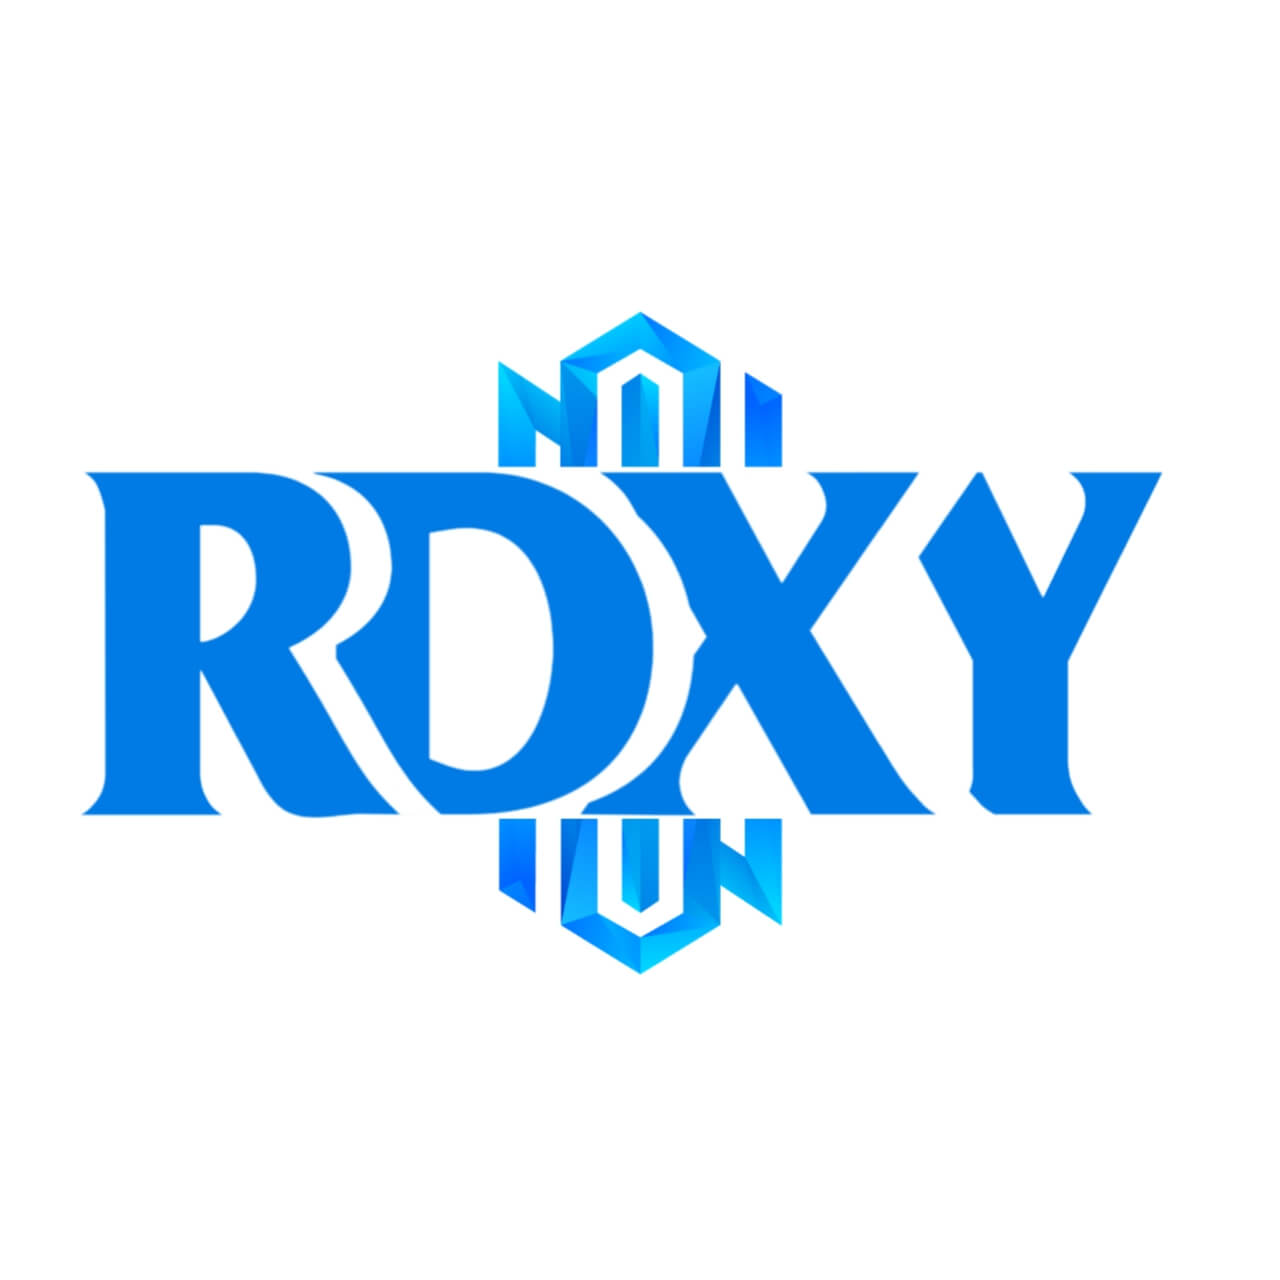 Team Redexxy logo